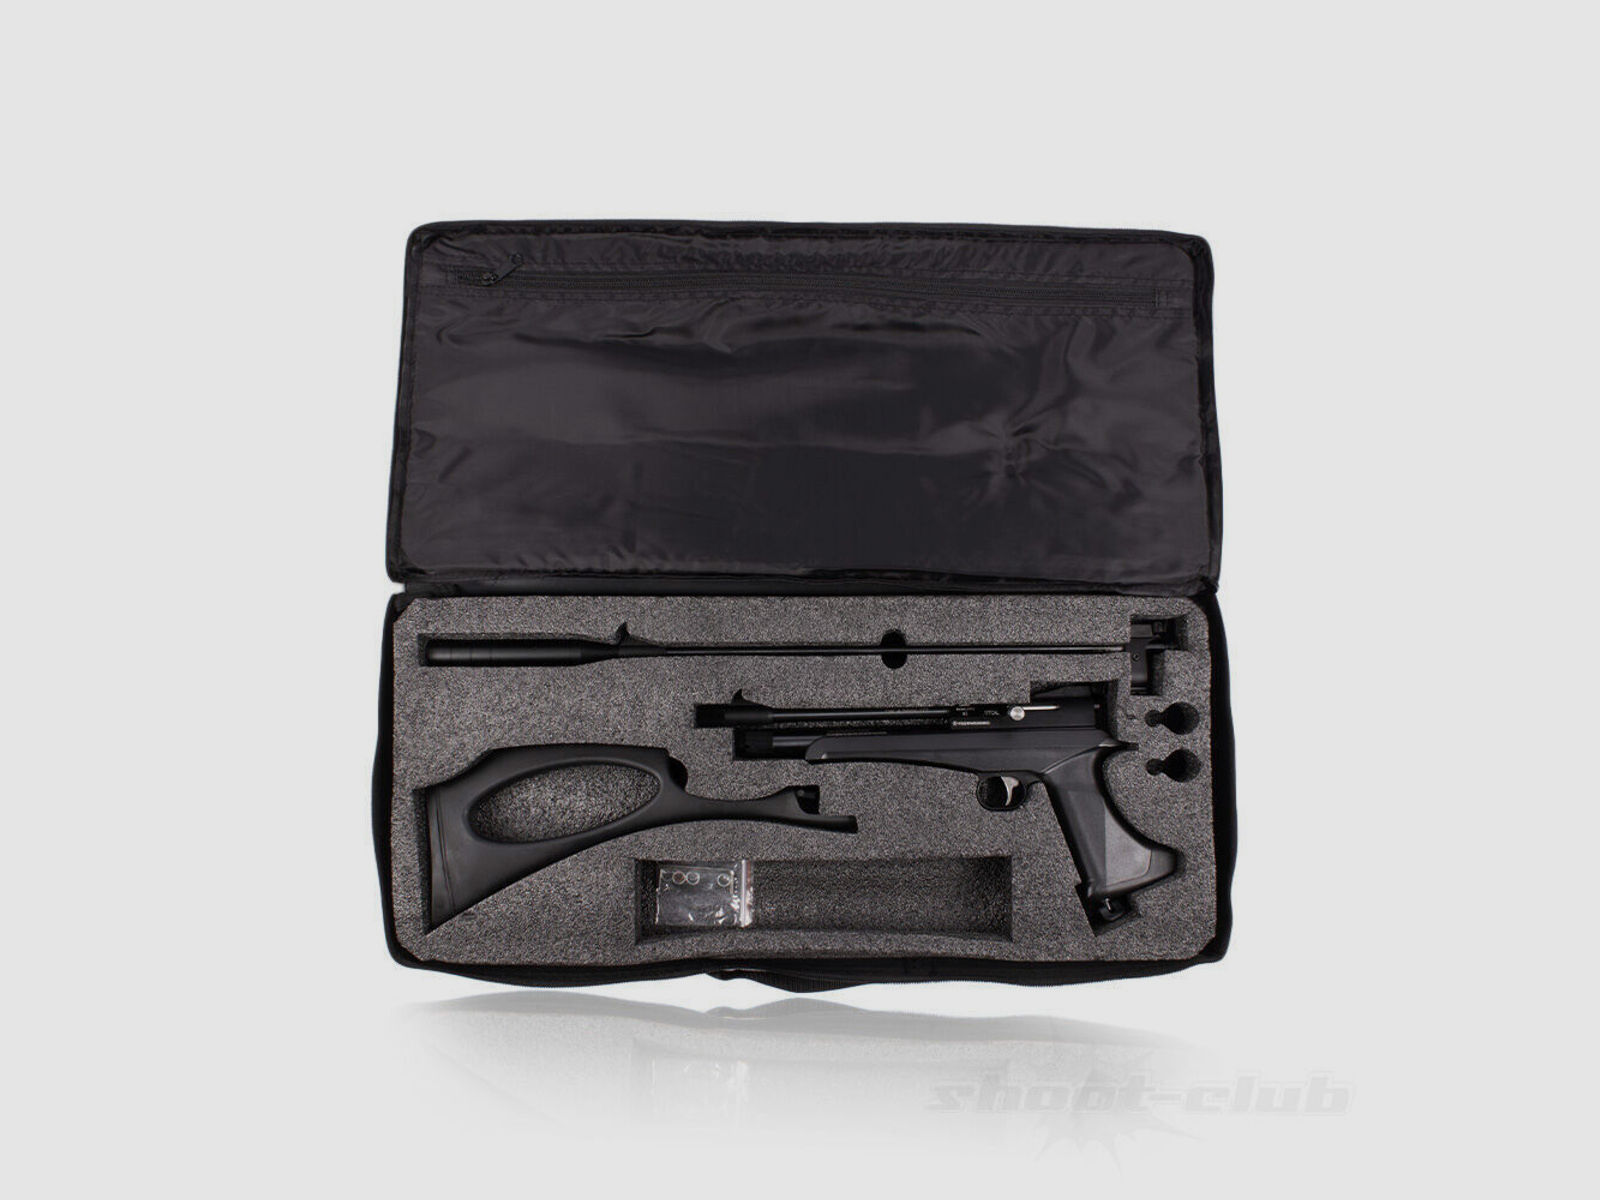 DIANA Chaser Rifle CO2 Pistole Kaliber 4,5 mm Diabolos im Zielscheiben-Set